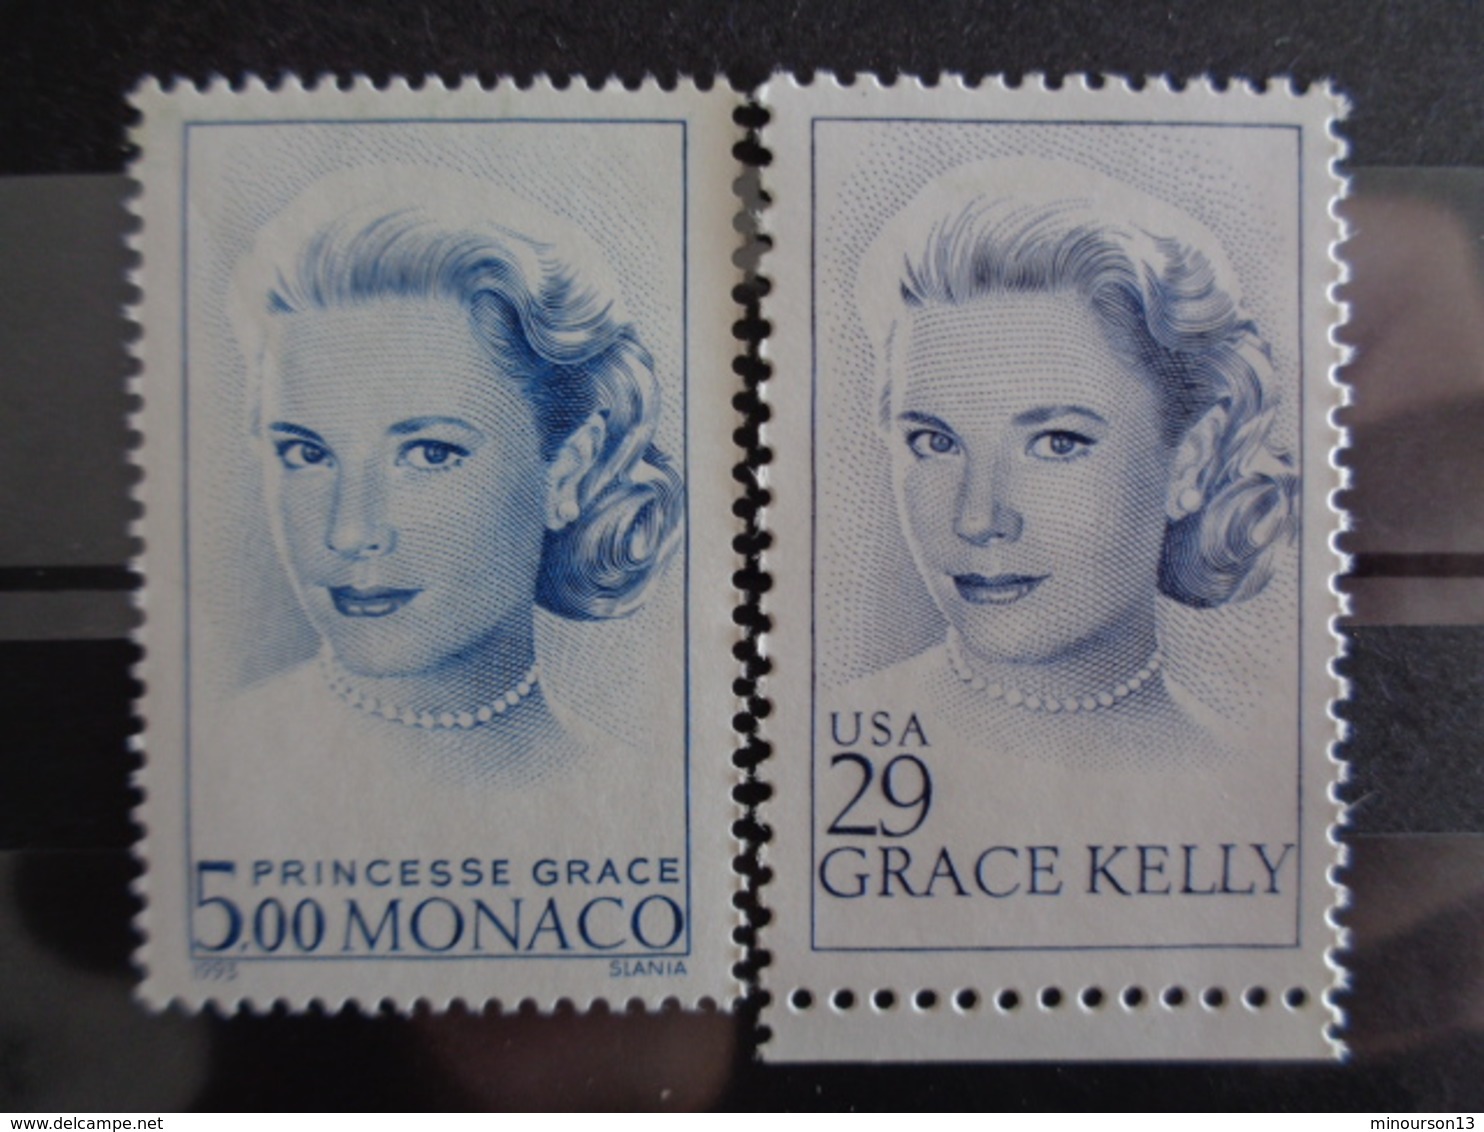 MONACO 1993 Y&T N° 1871 ** + EMISSION ETATS UNIS N° 2140 ** - HOMMAGE A GRACE KELLY - Unused Stamps